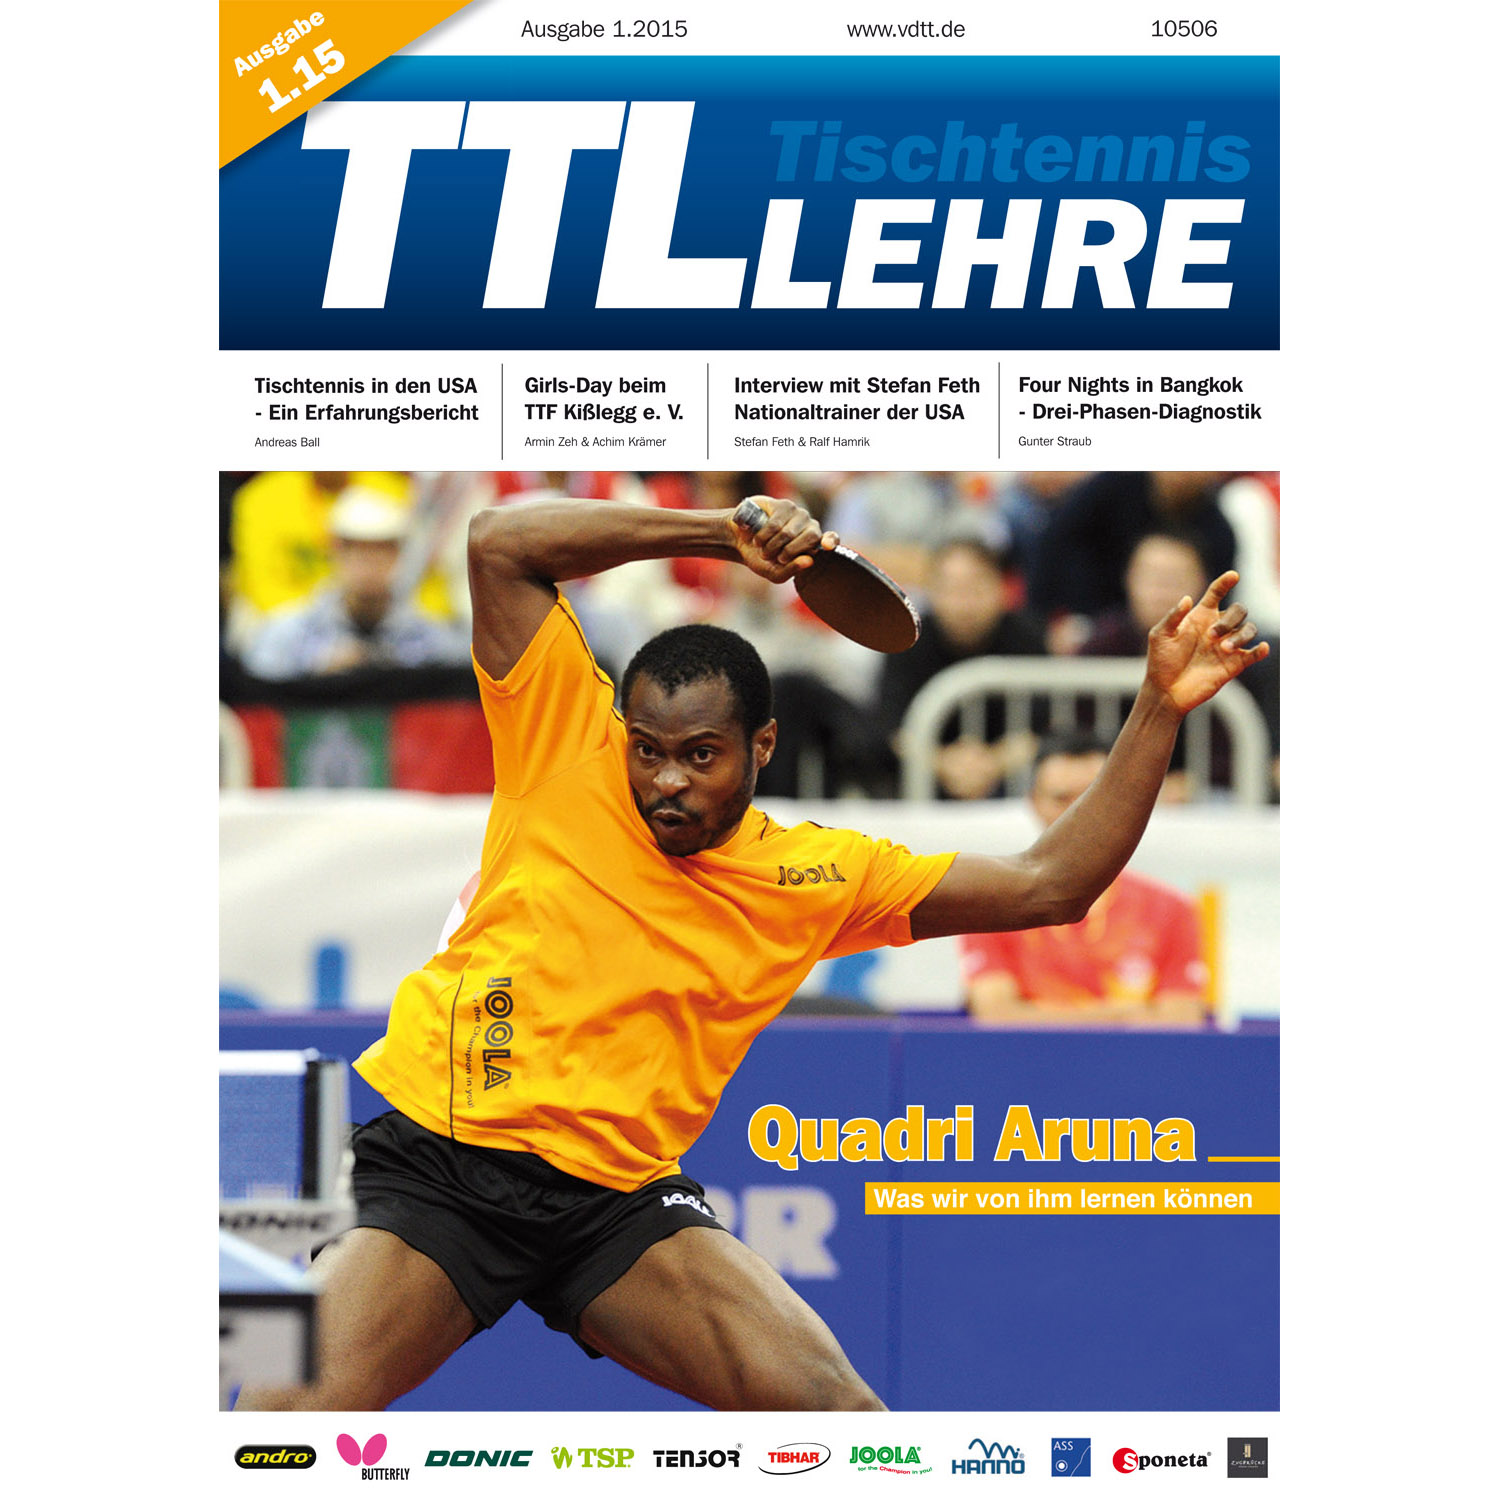 VDTT-Zeitschrift Tischtennislehre - Ausgabe: 2015-01